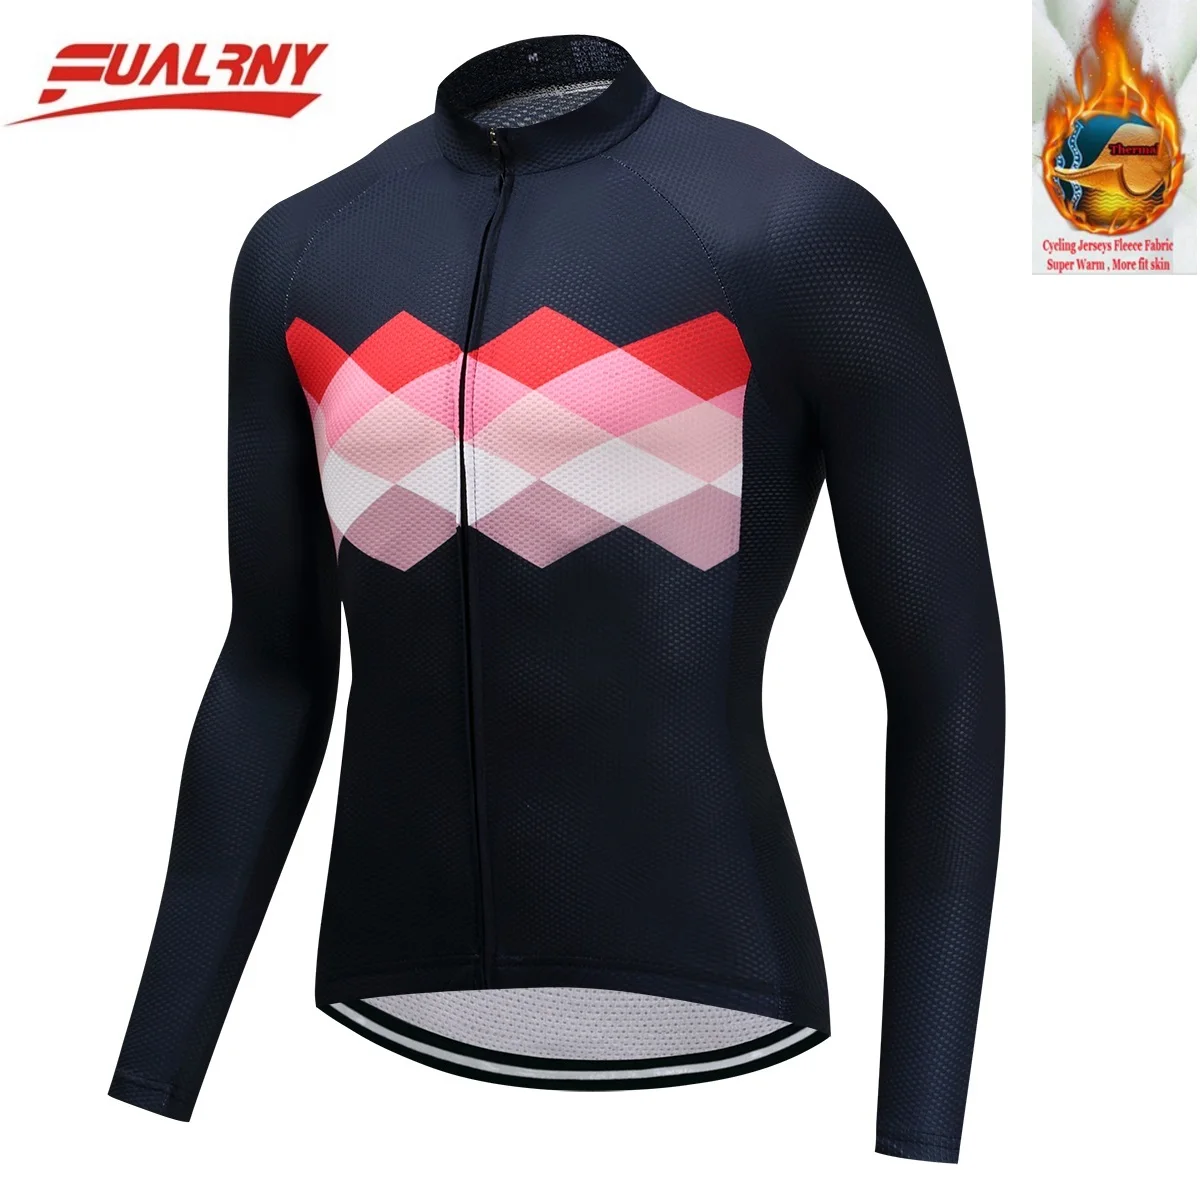 Команда fualrny флис Ropa Ciclismo Зимний Велоспорт Джерси/Зимняя Термальная флисовая майка/MTB велосипедная одежда для человека яркая грудь - Цвет: C1